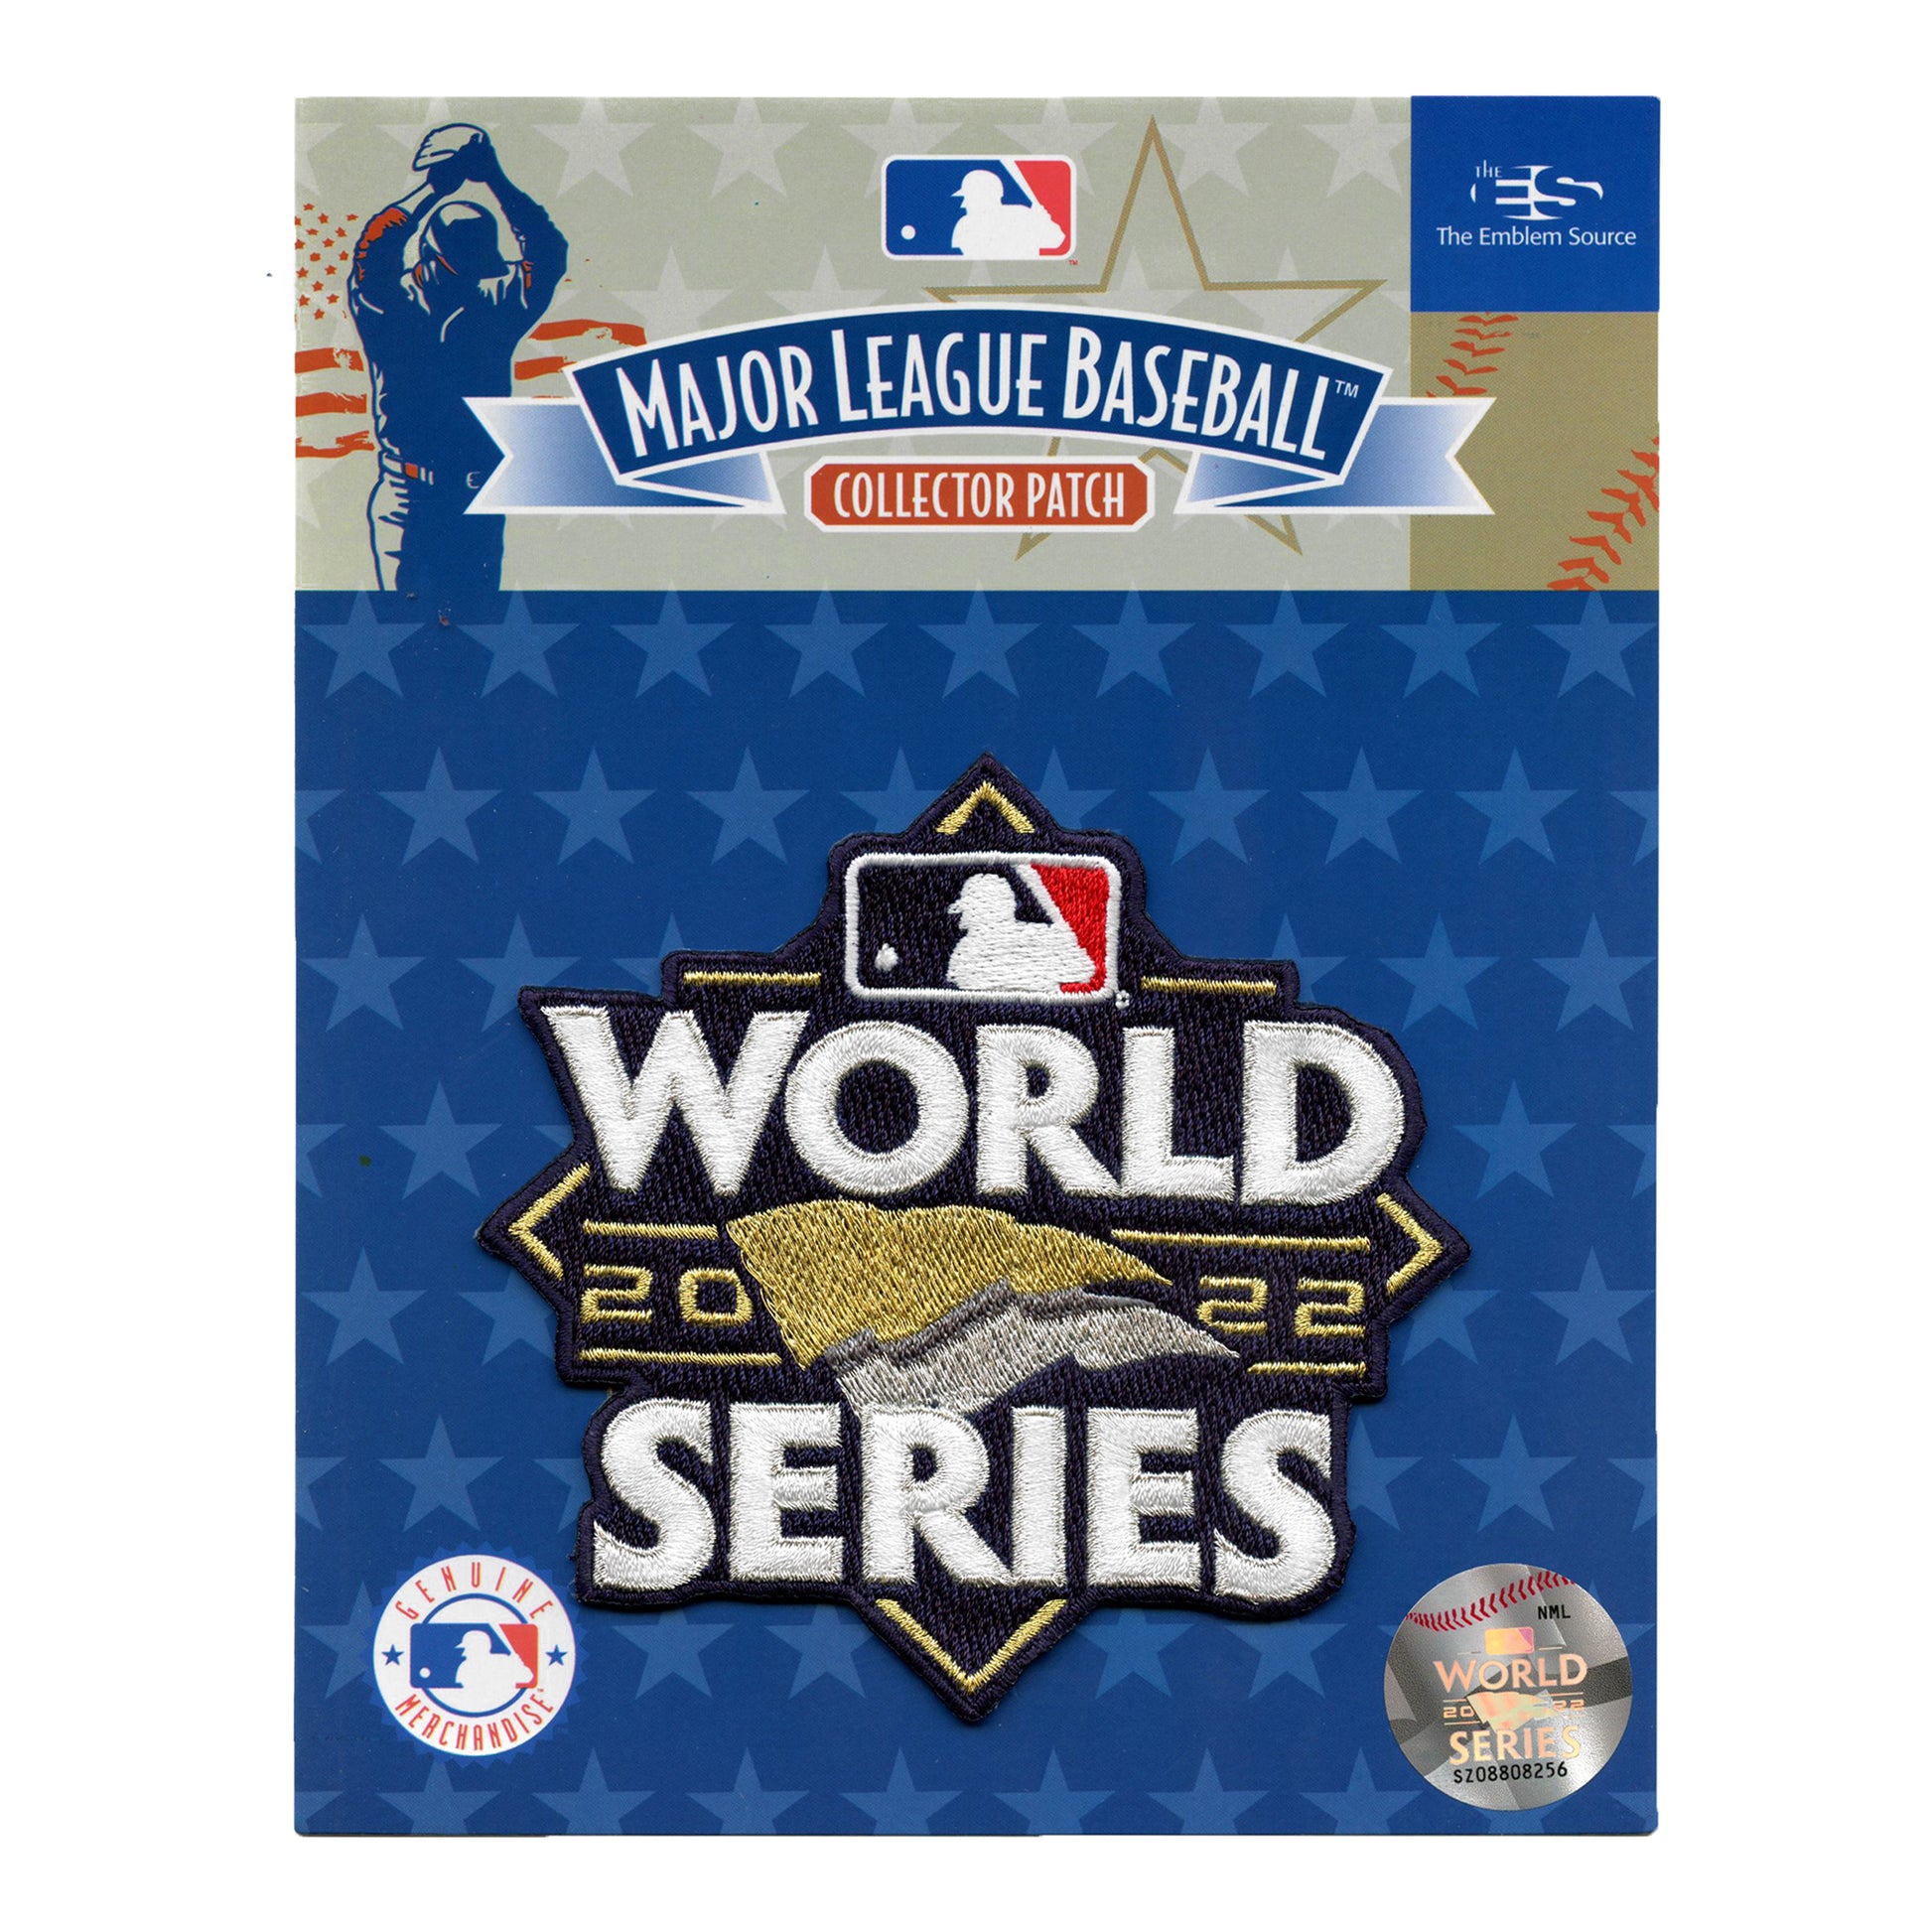 Stitch Philadelphia Phillies Baseball Jersey -  Worldwide  Shipping